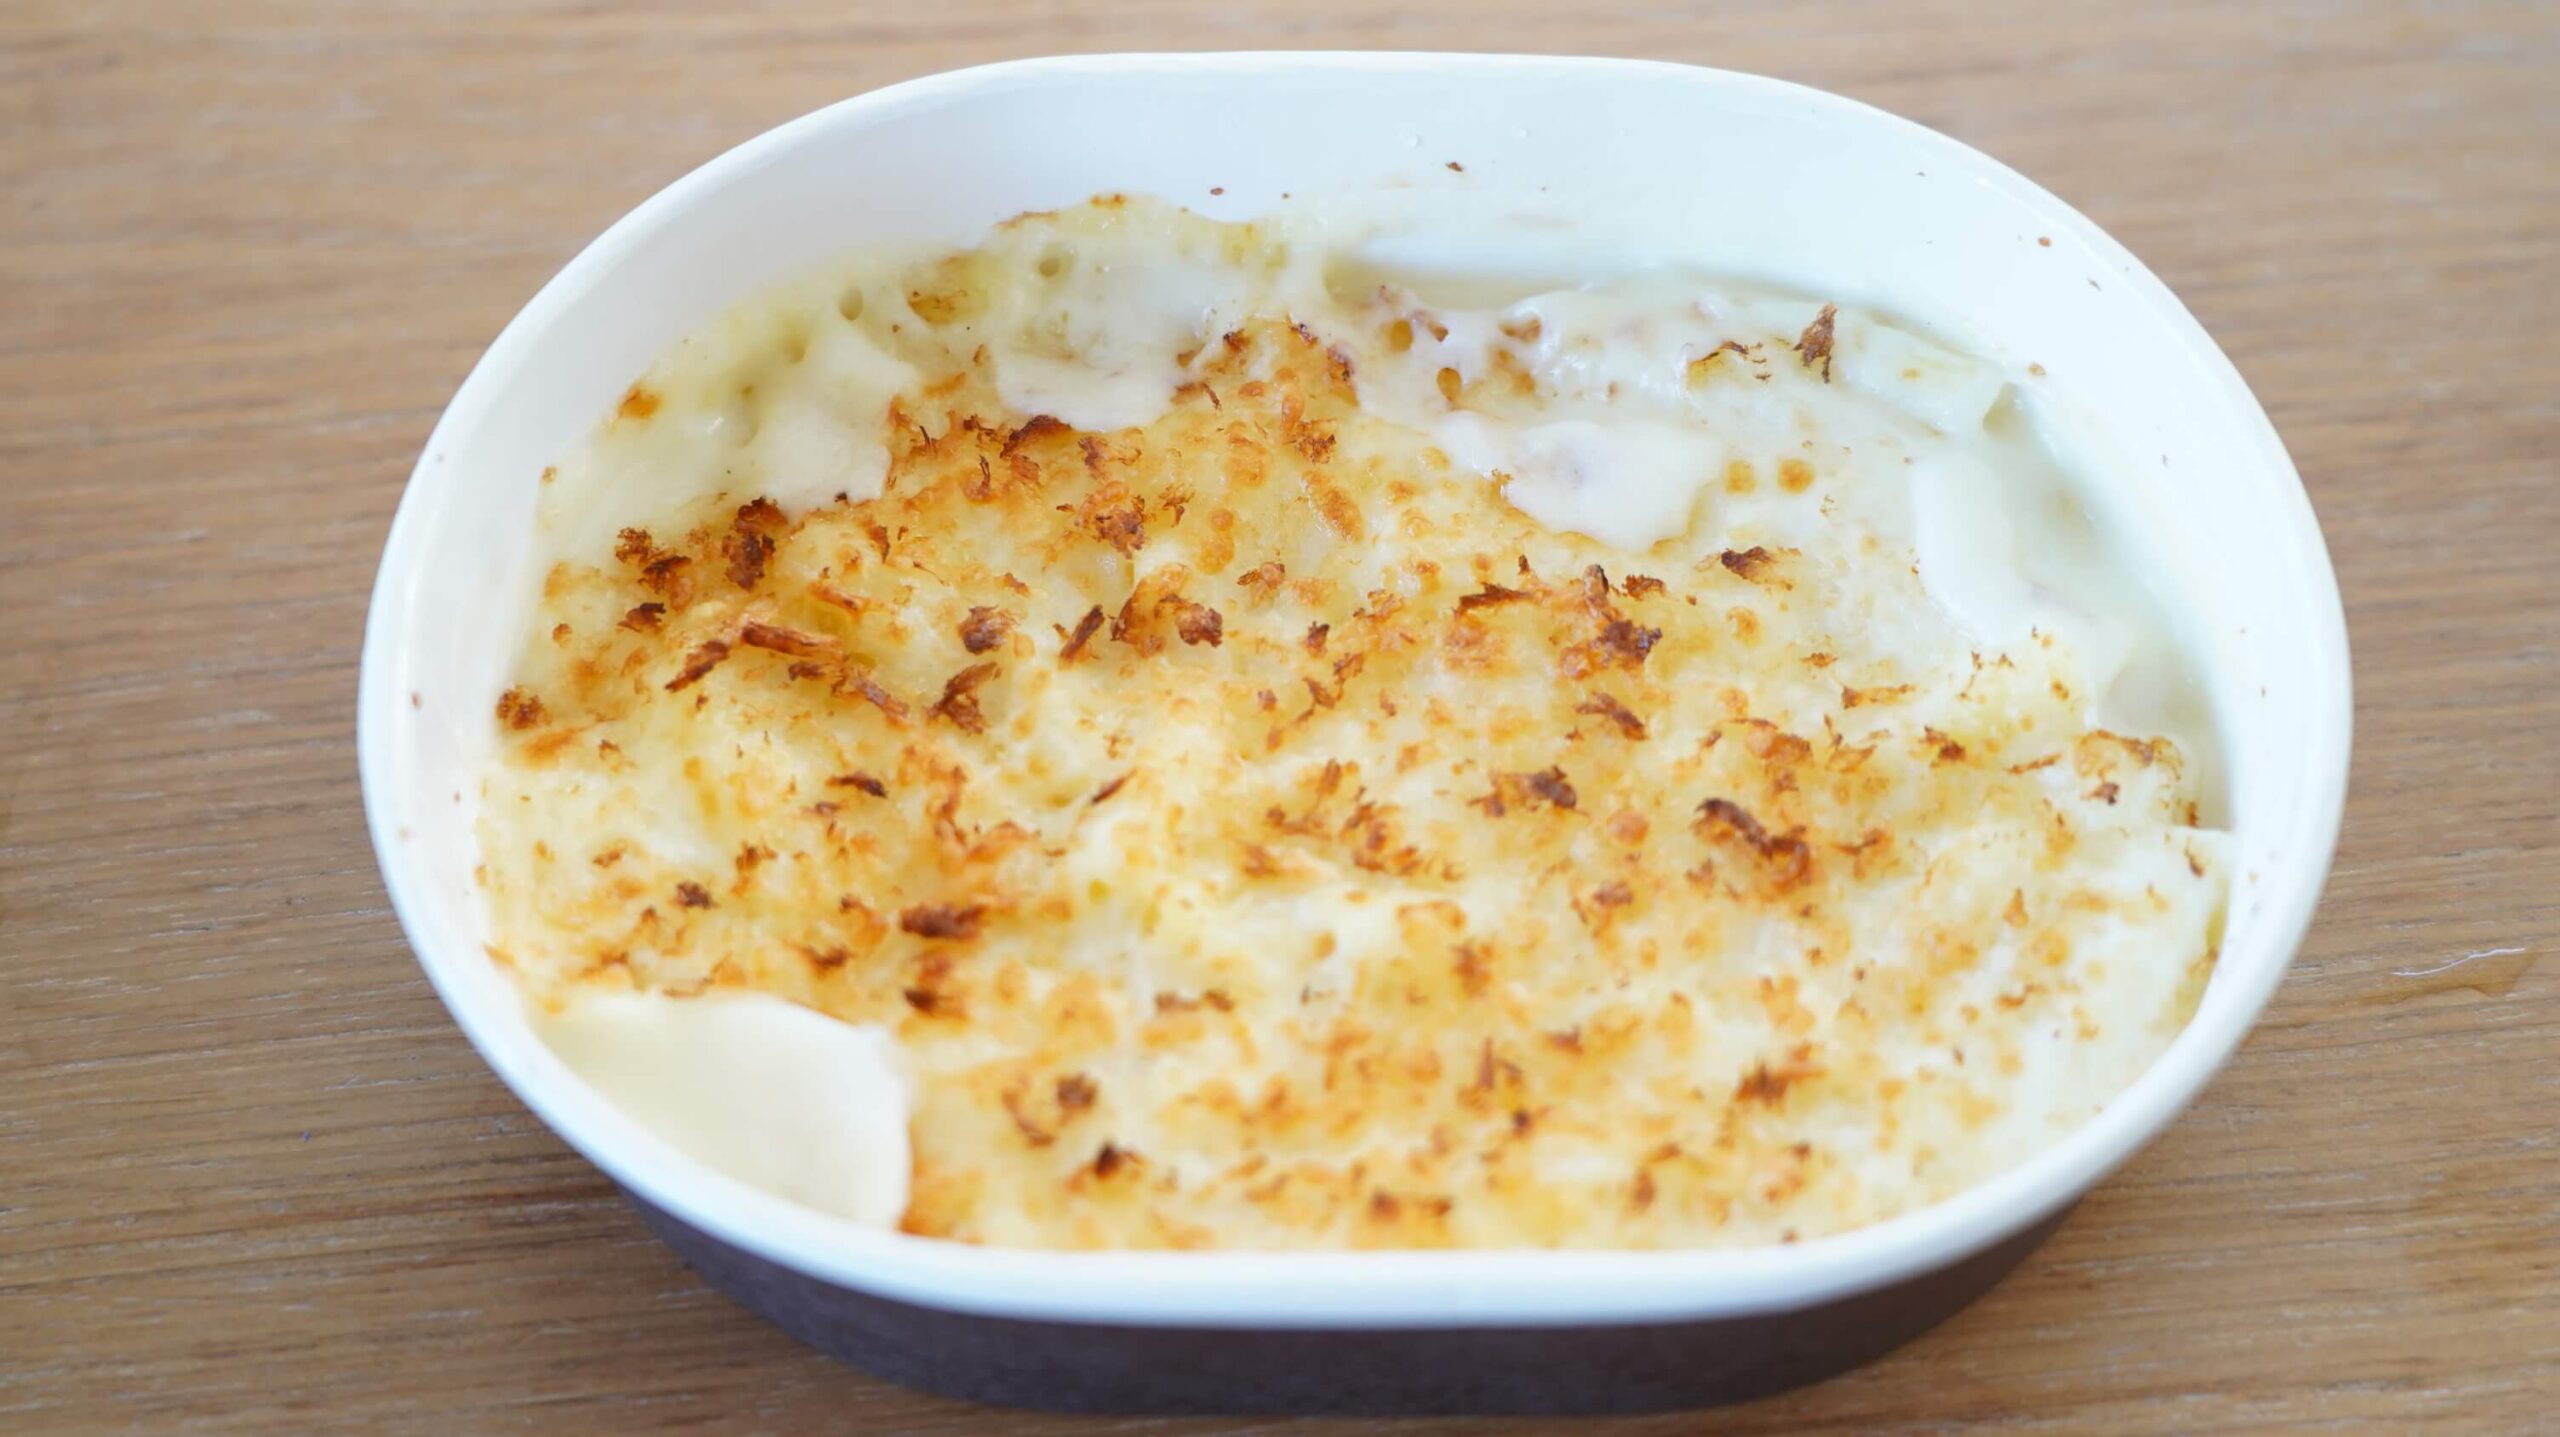 セブンイレブンの冷凍食品「チーズの香り広がる・マカロニグラタン」を上から撮影した写真